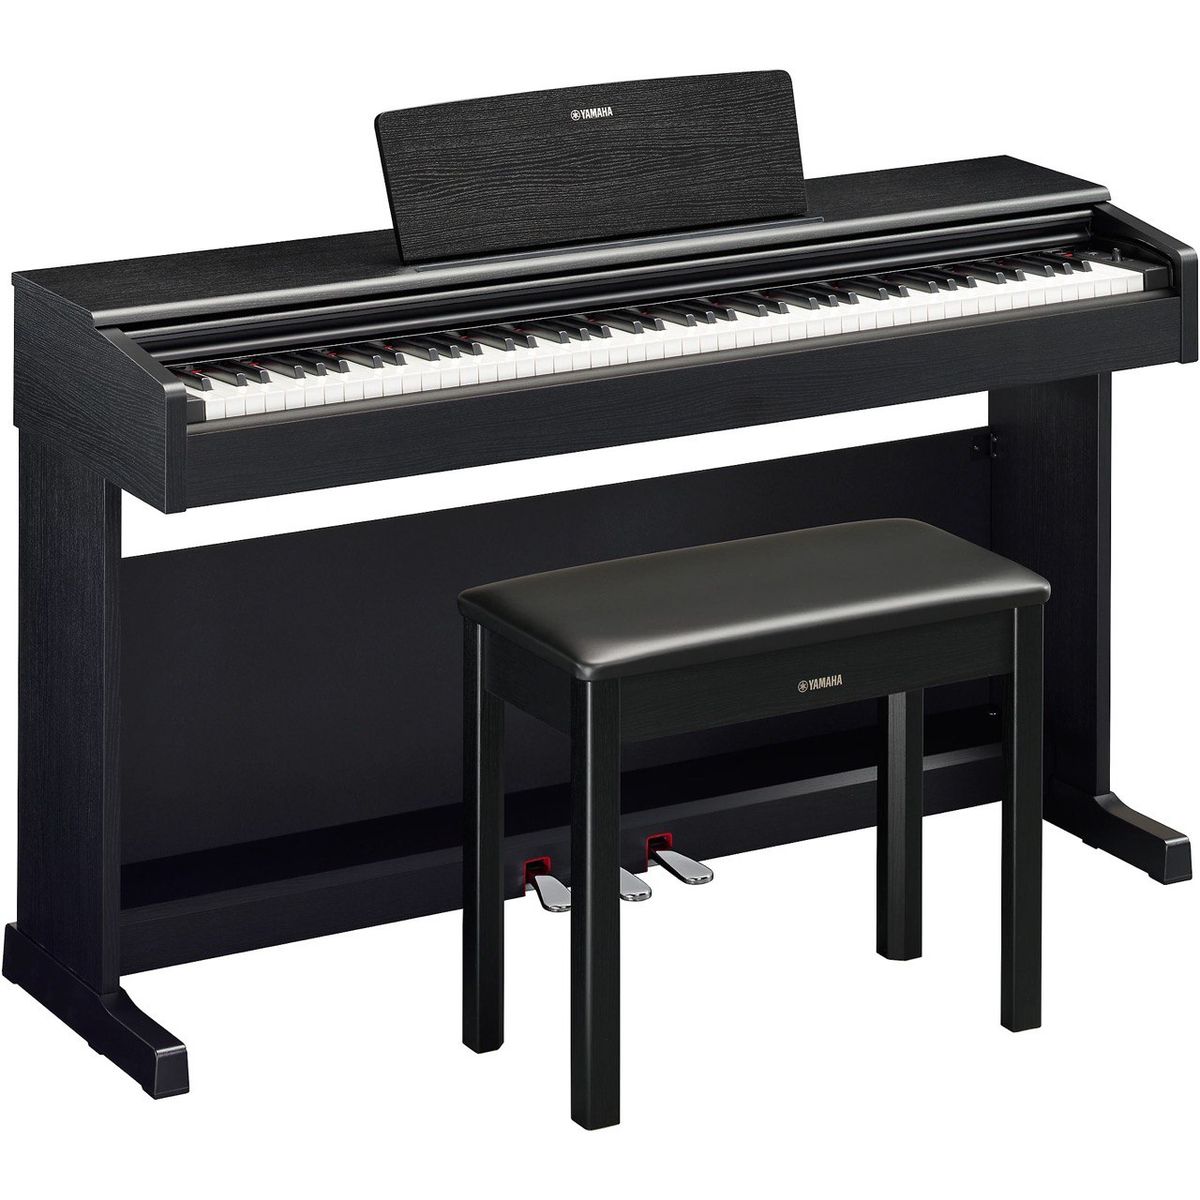 Цифровые пианино Yamaha YDP-145B Arius (банкетка в комплекте) цифровые пианино yamaha ydp s35wa arius